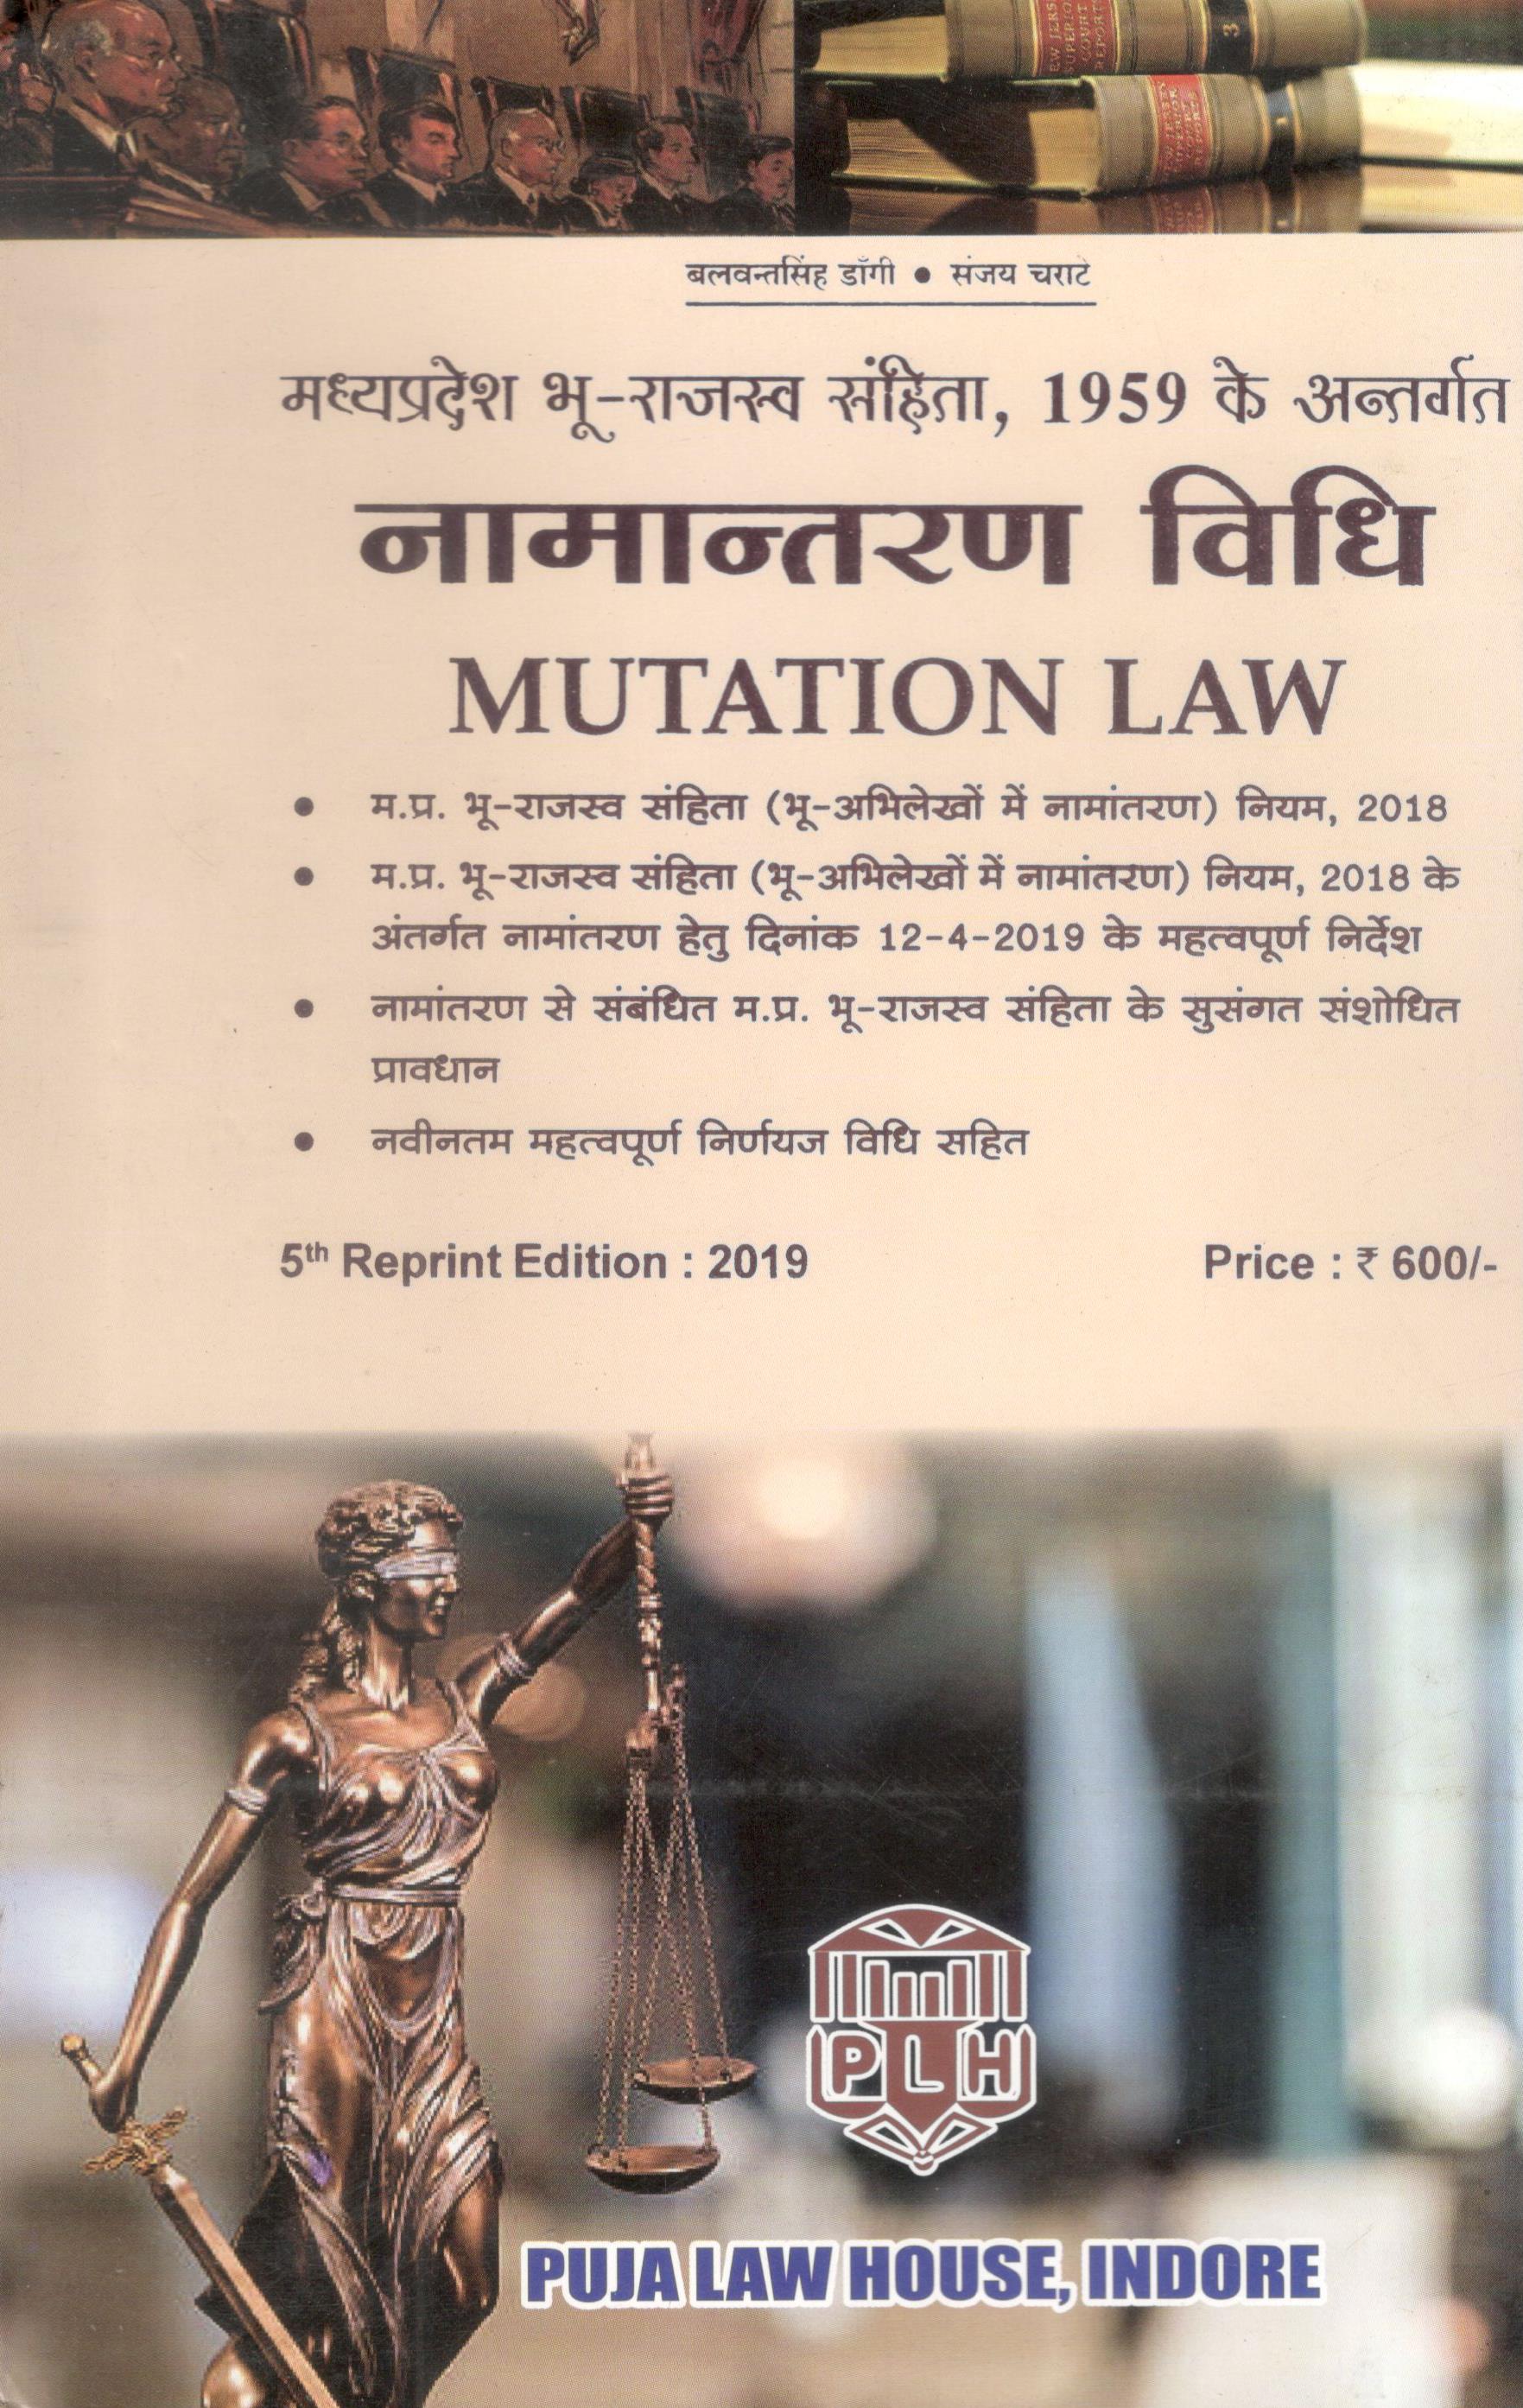  Buy बलवंत सिंह डांगी, संजय चराटे - मध्य प्रदेश भू राजस्व सहिता, १९५९ के अंतर्गत नामांतरण विधि / MUTATION LAW